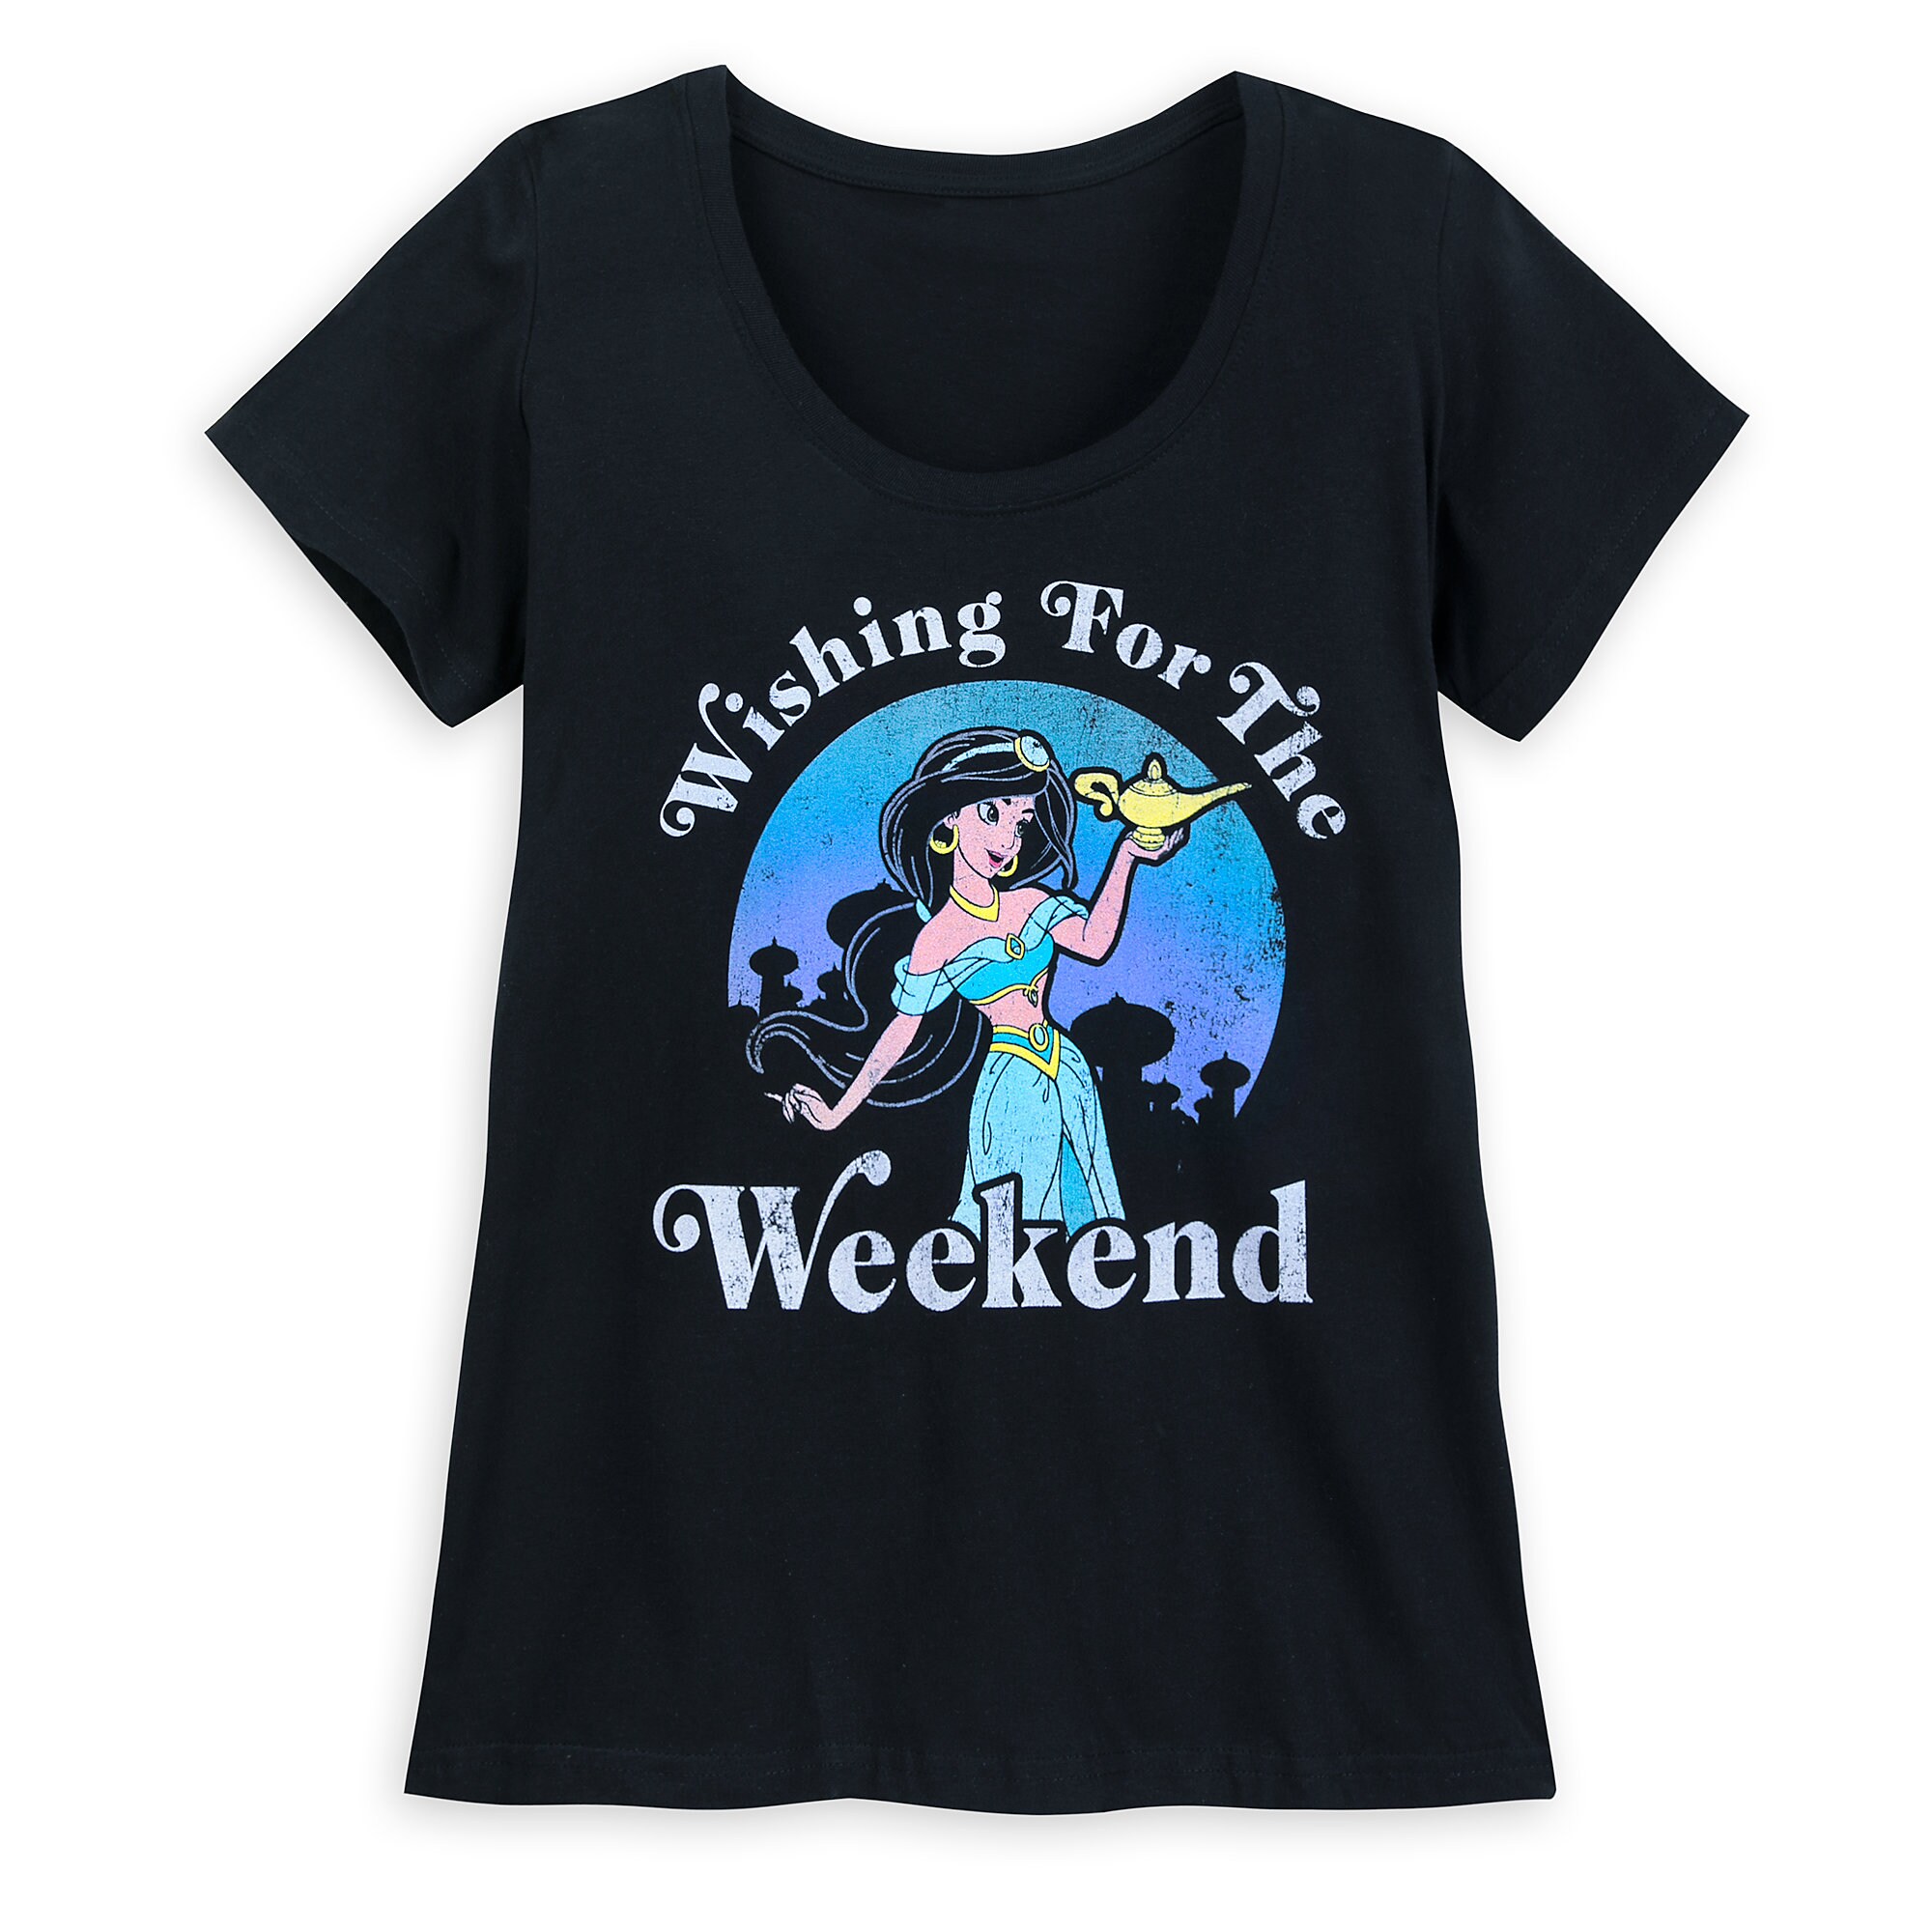 Jasmine Weekend T-Shirt for Women - Aladdin